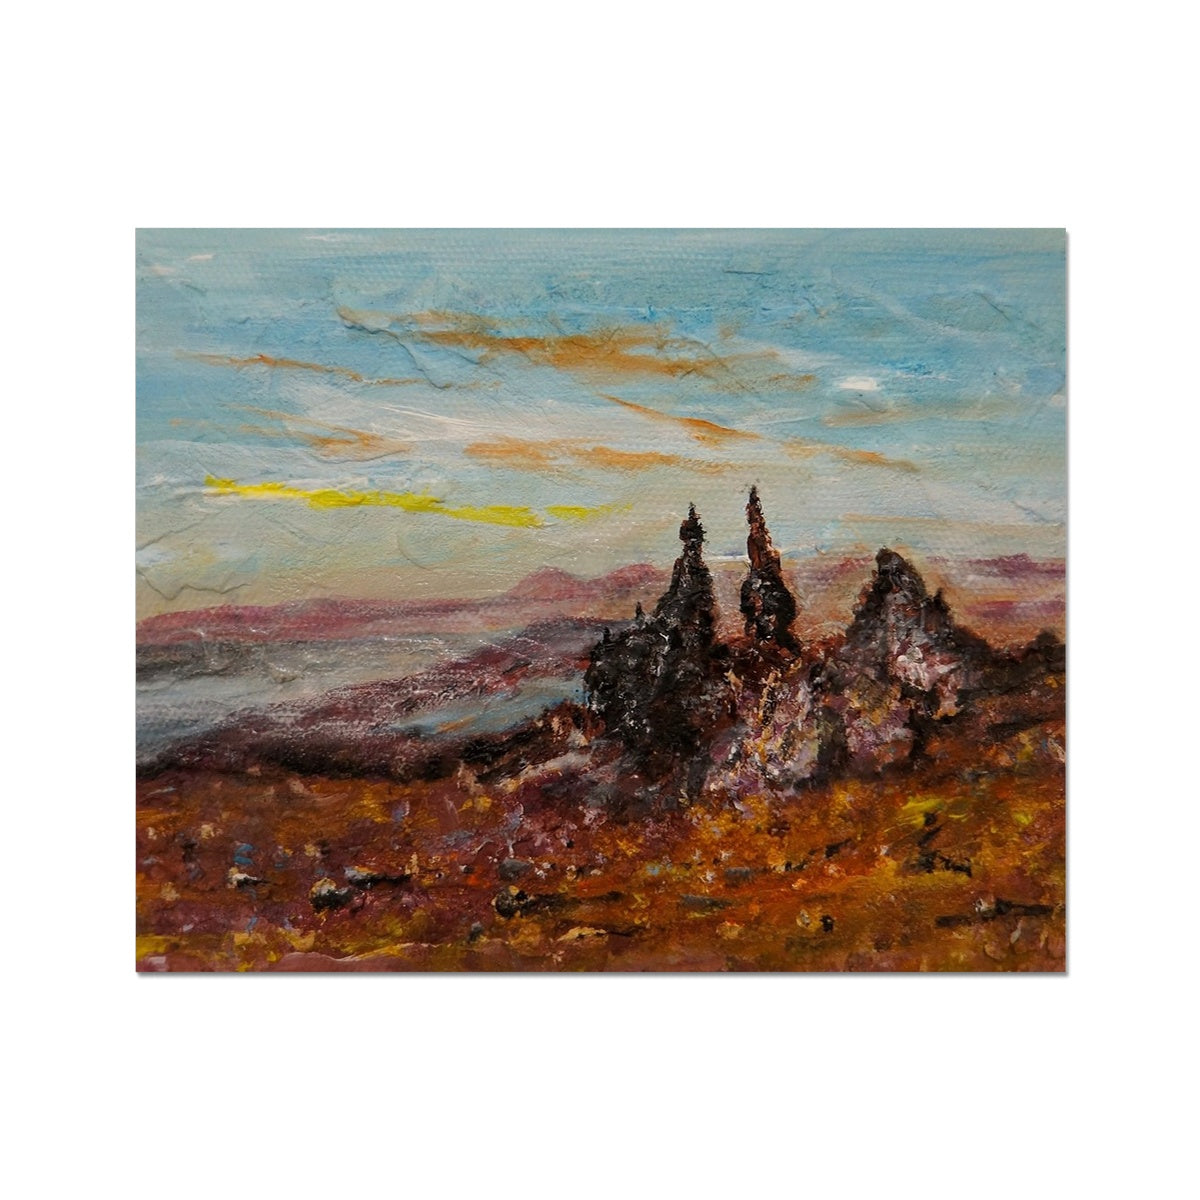 The Storr Skye Painting | Artist Proof Collector Prints From Scotland-Artist Proof Collector Prints-Skye Art Gallery-20"x16"-Paintings, Prints, Homeware, Art Gifts From Scotland By Scottish Artist Kevin Hunter